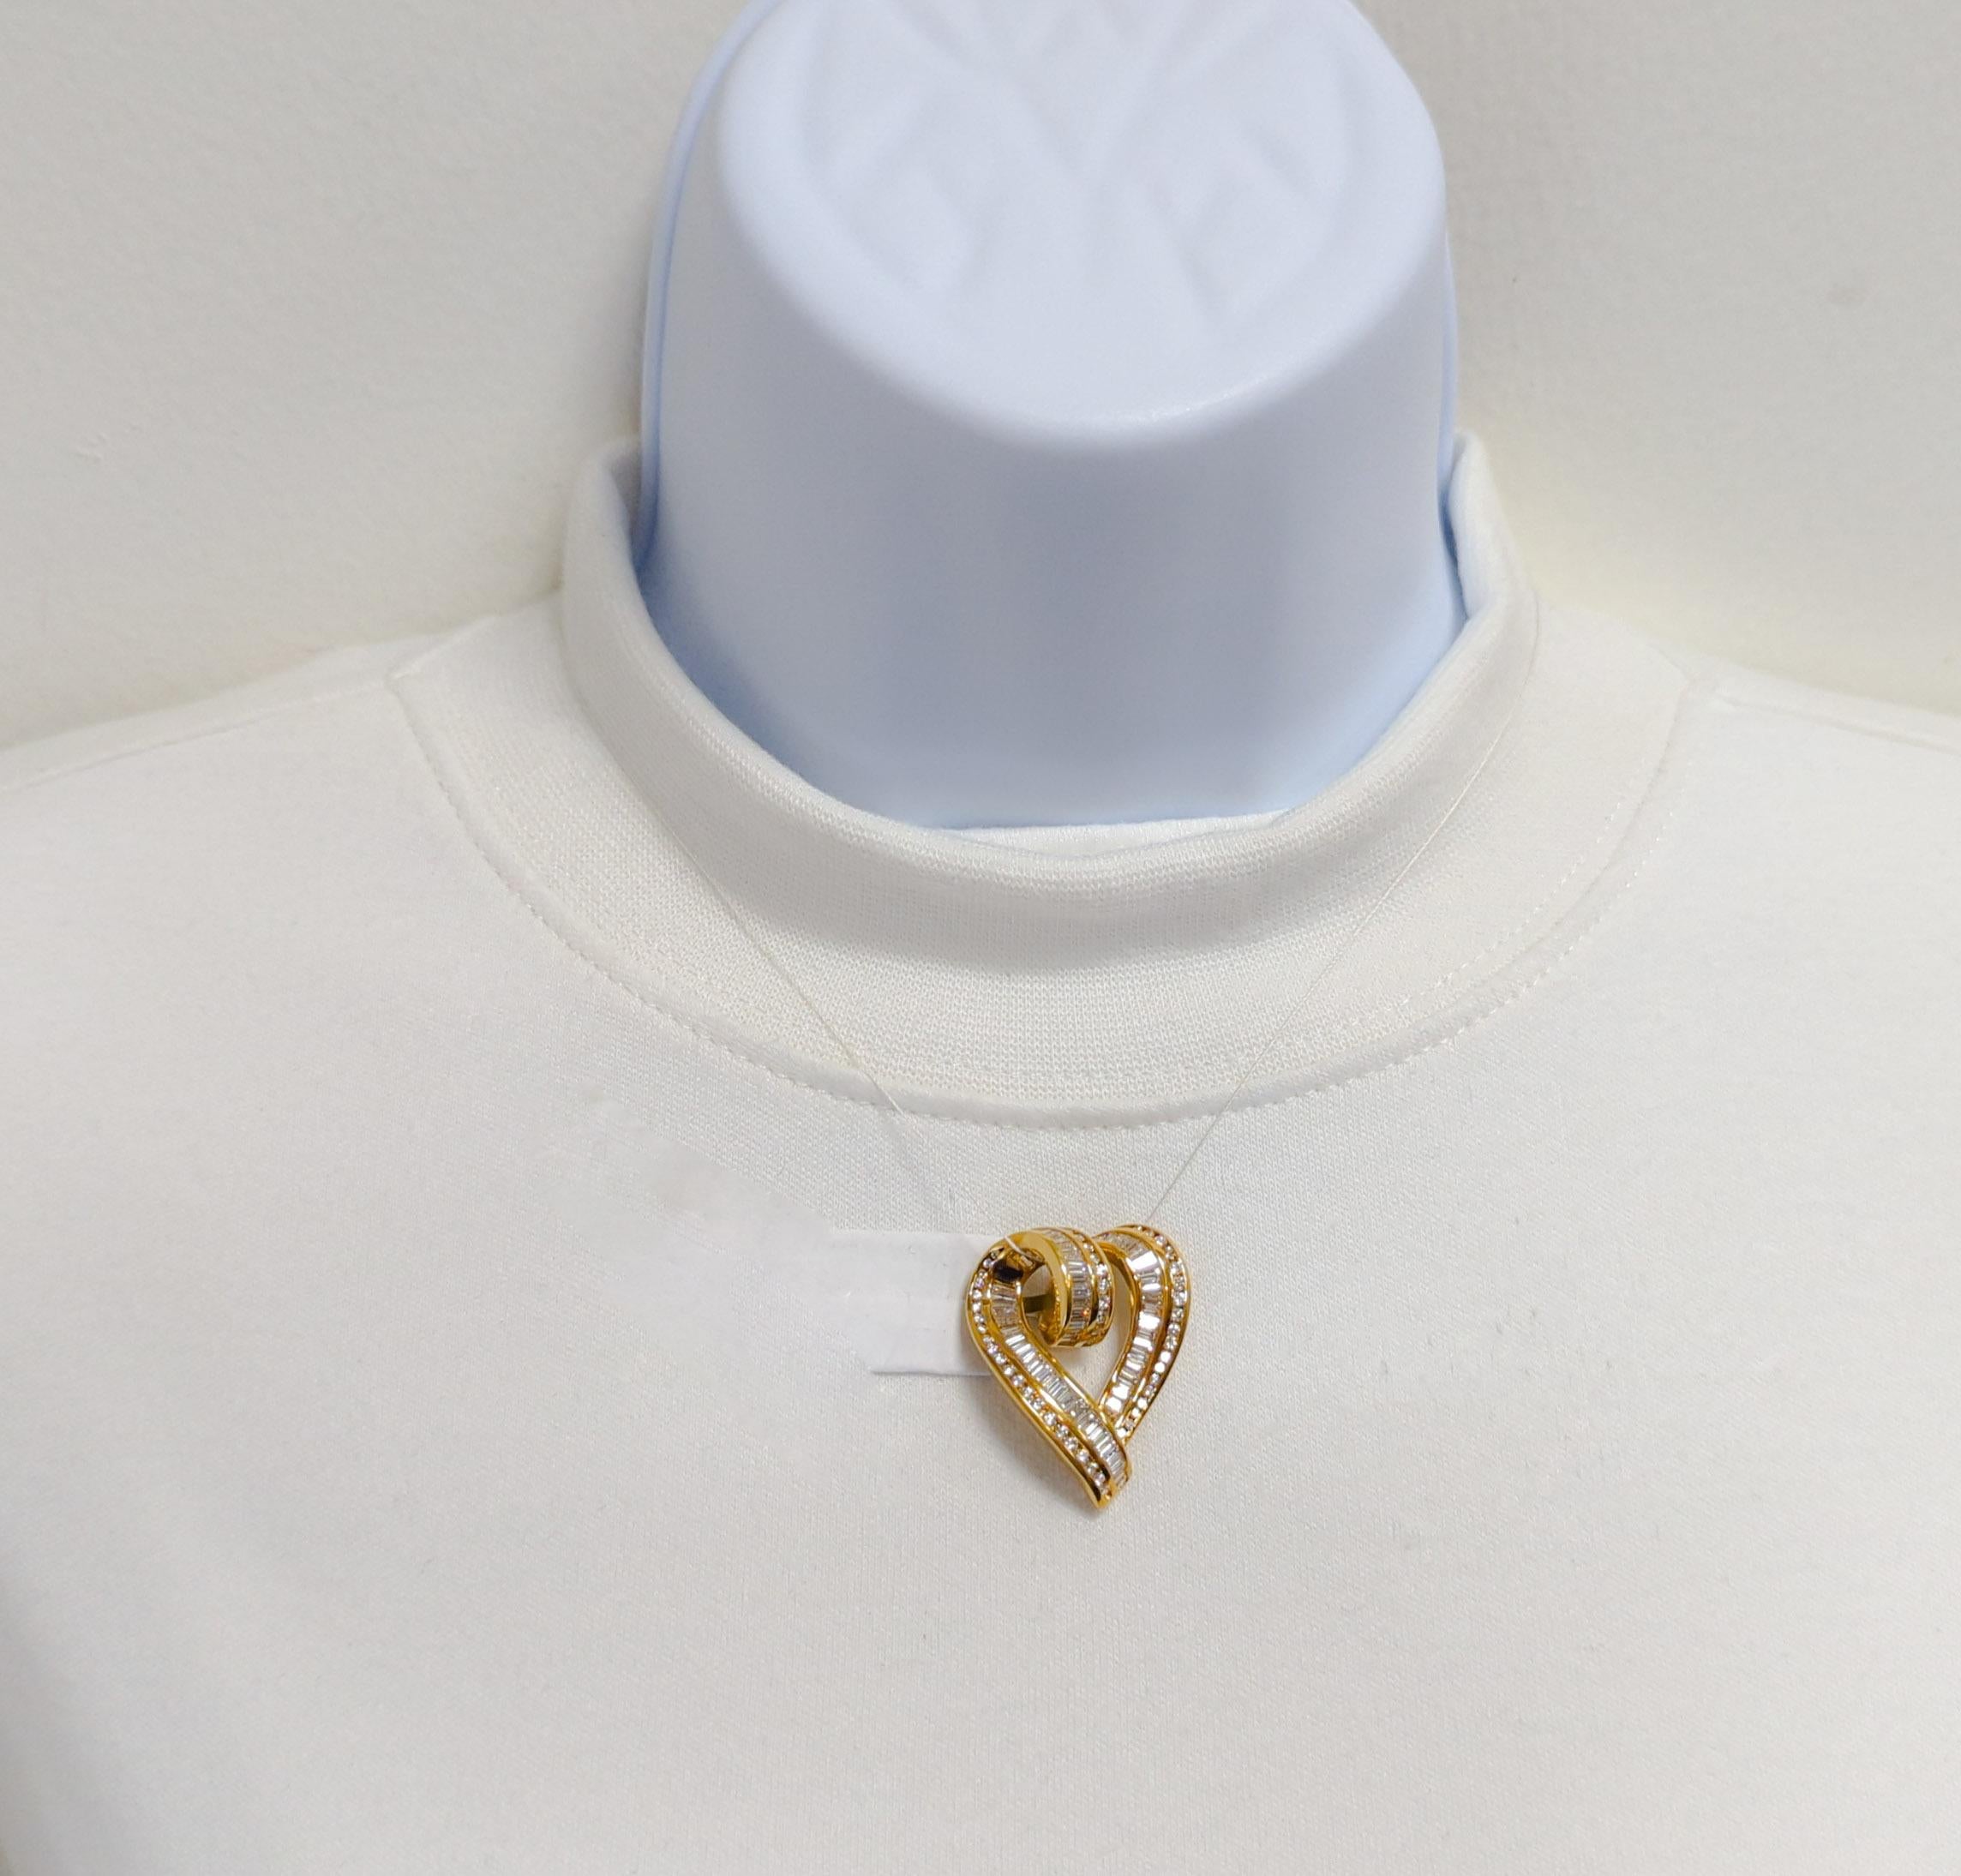 Magnifique pendentif Charles Krypell avec des baguettes et des ronds de diamants blancs de bonne qualité.  Fabriqué à la main en or jaune 18k.